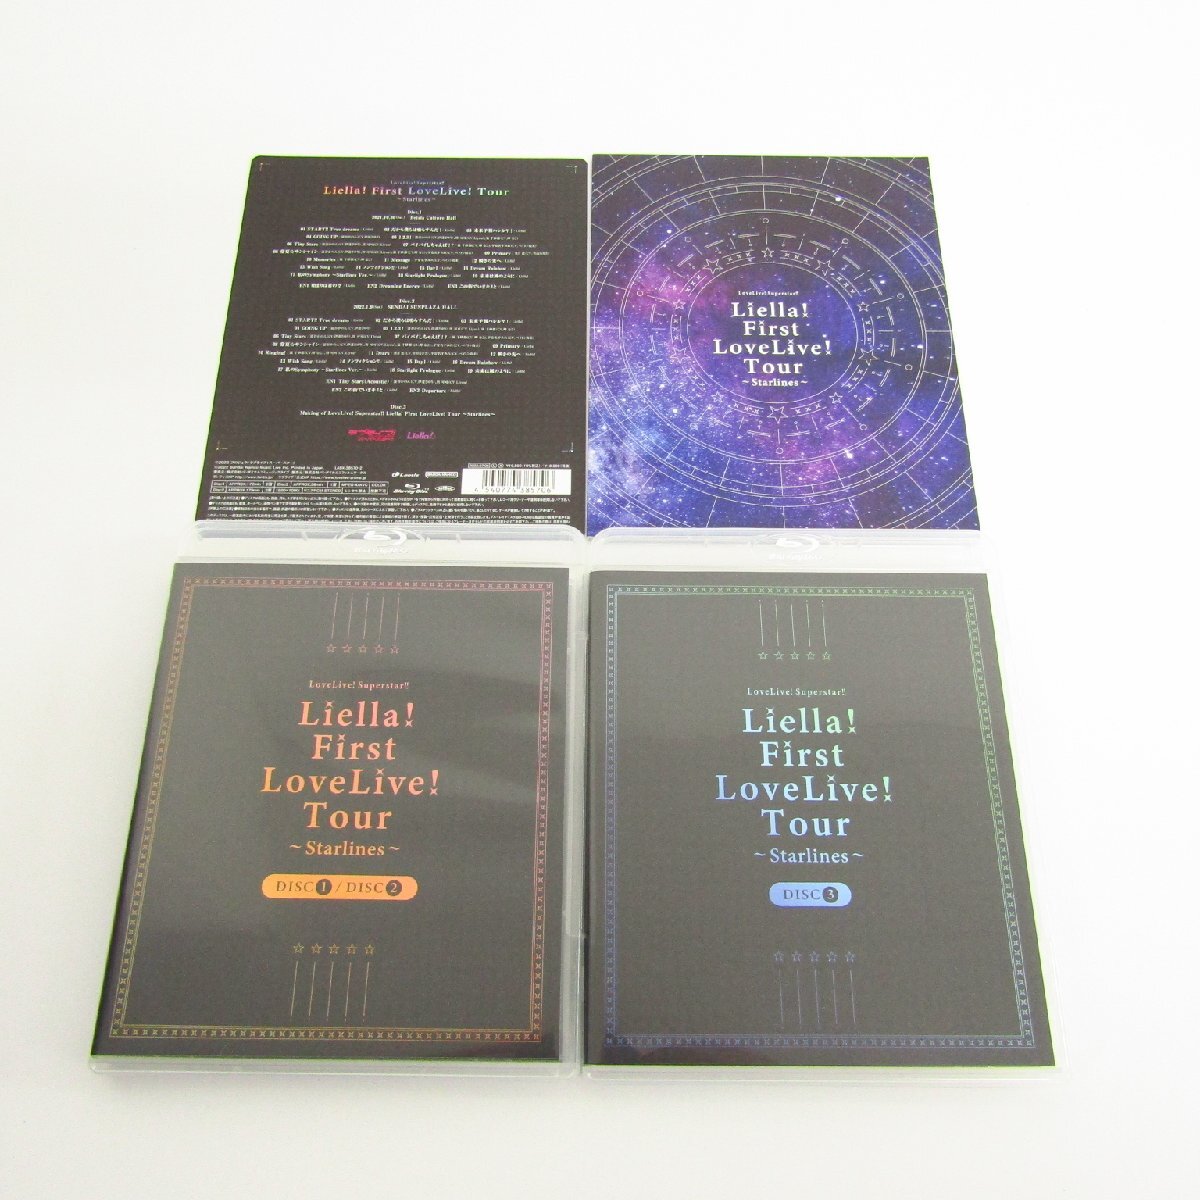 ラブライブ! スーパースター!! Liella! First LoveLive! Tour ~Starlines~ Blu-ray Memorial BOX 完全生産限定 〓A9899_画像2